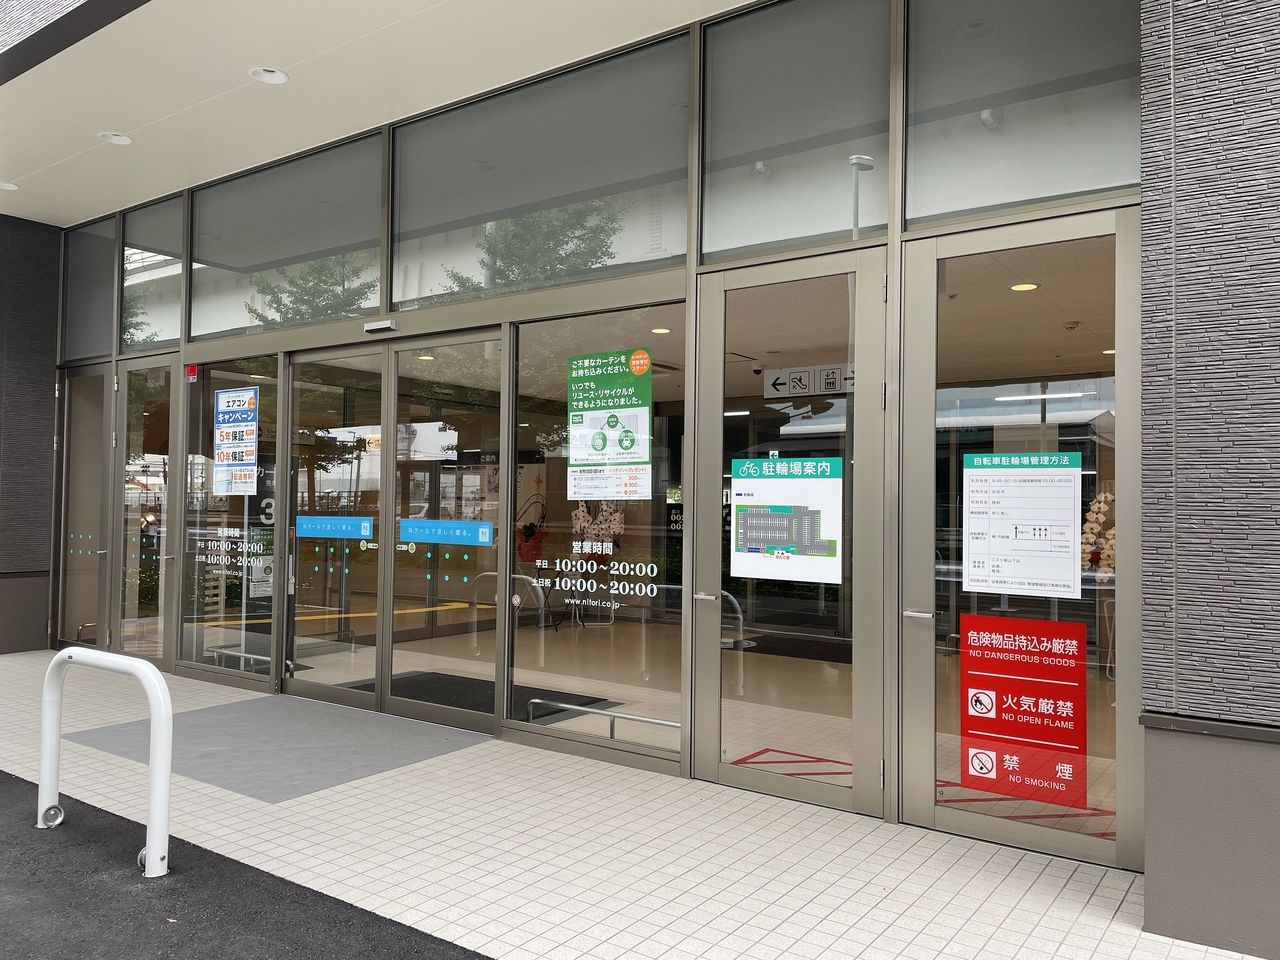 ニトリ 新山下店の店舗入口